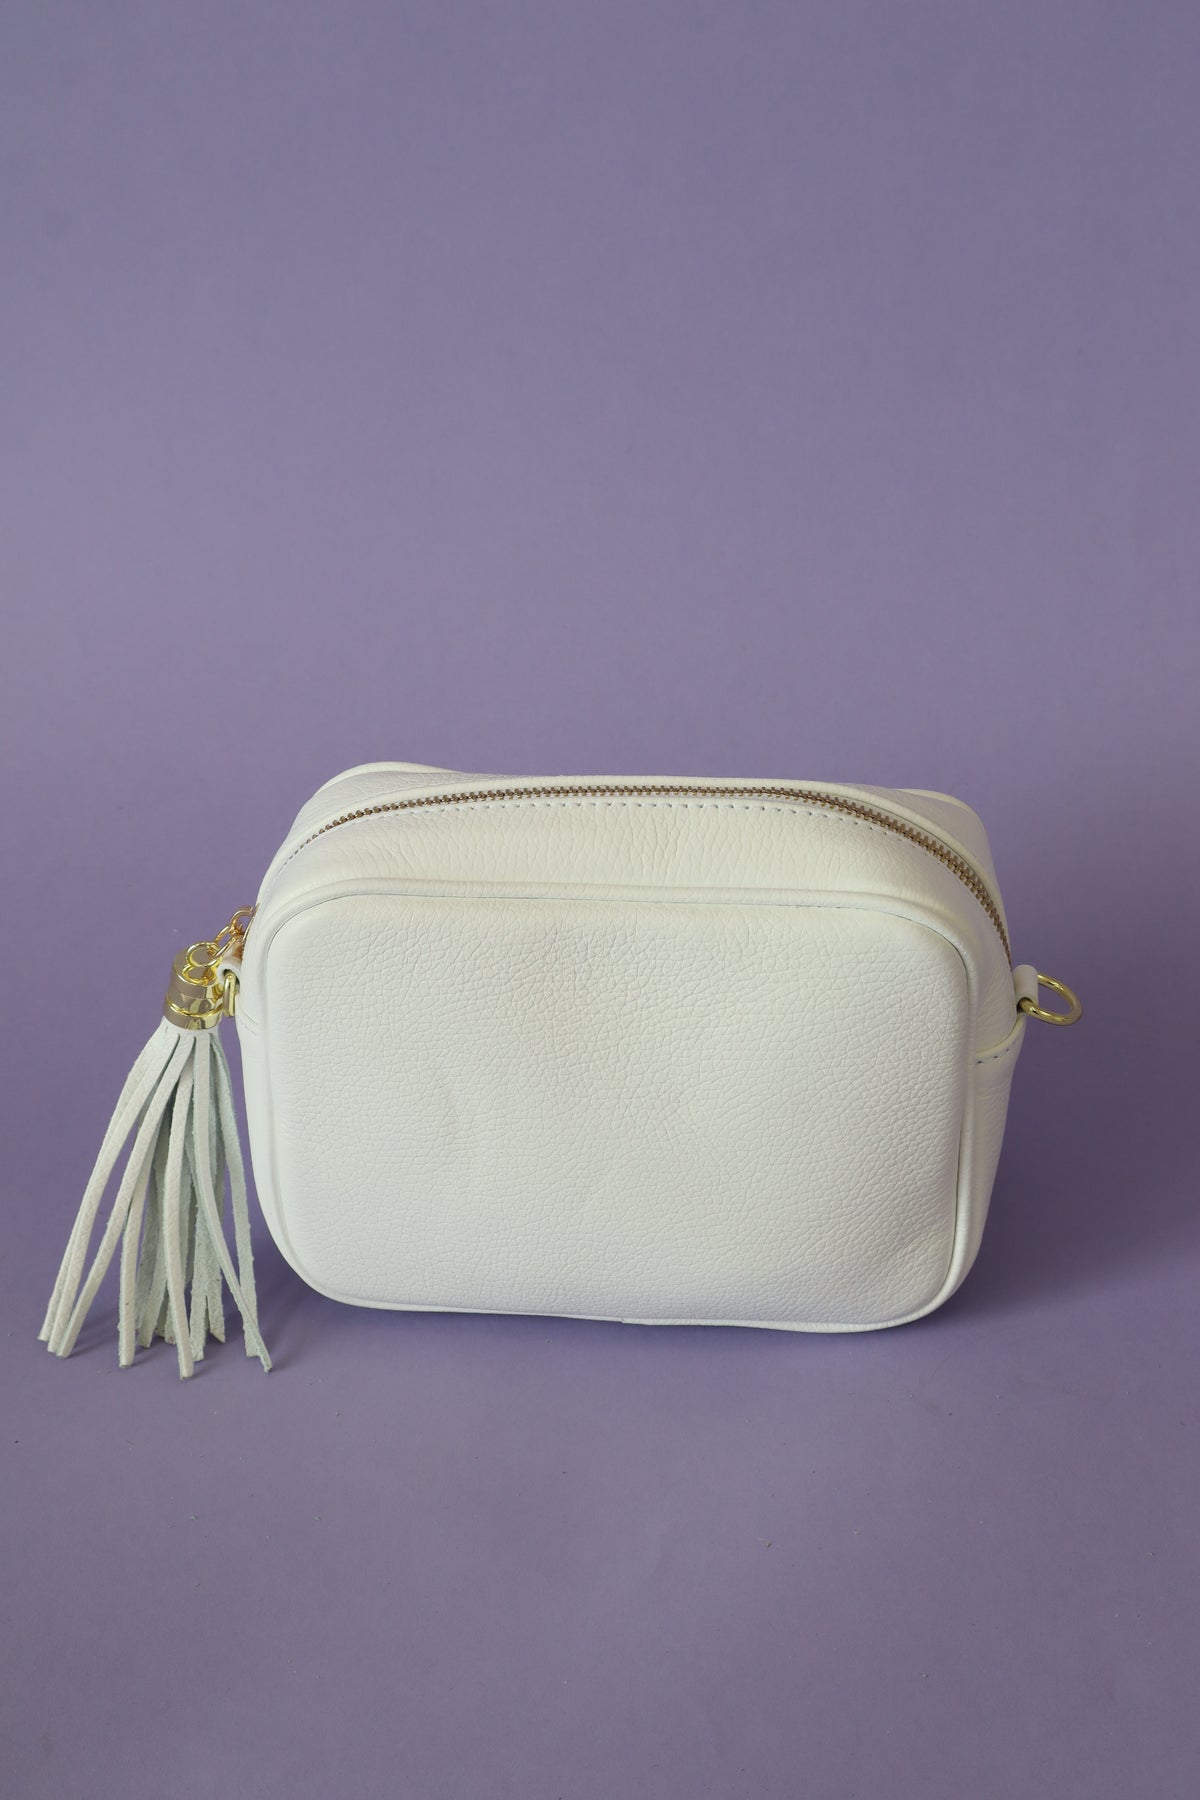 Remi Handbag in White